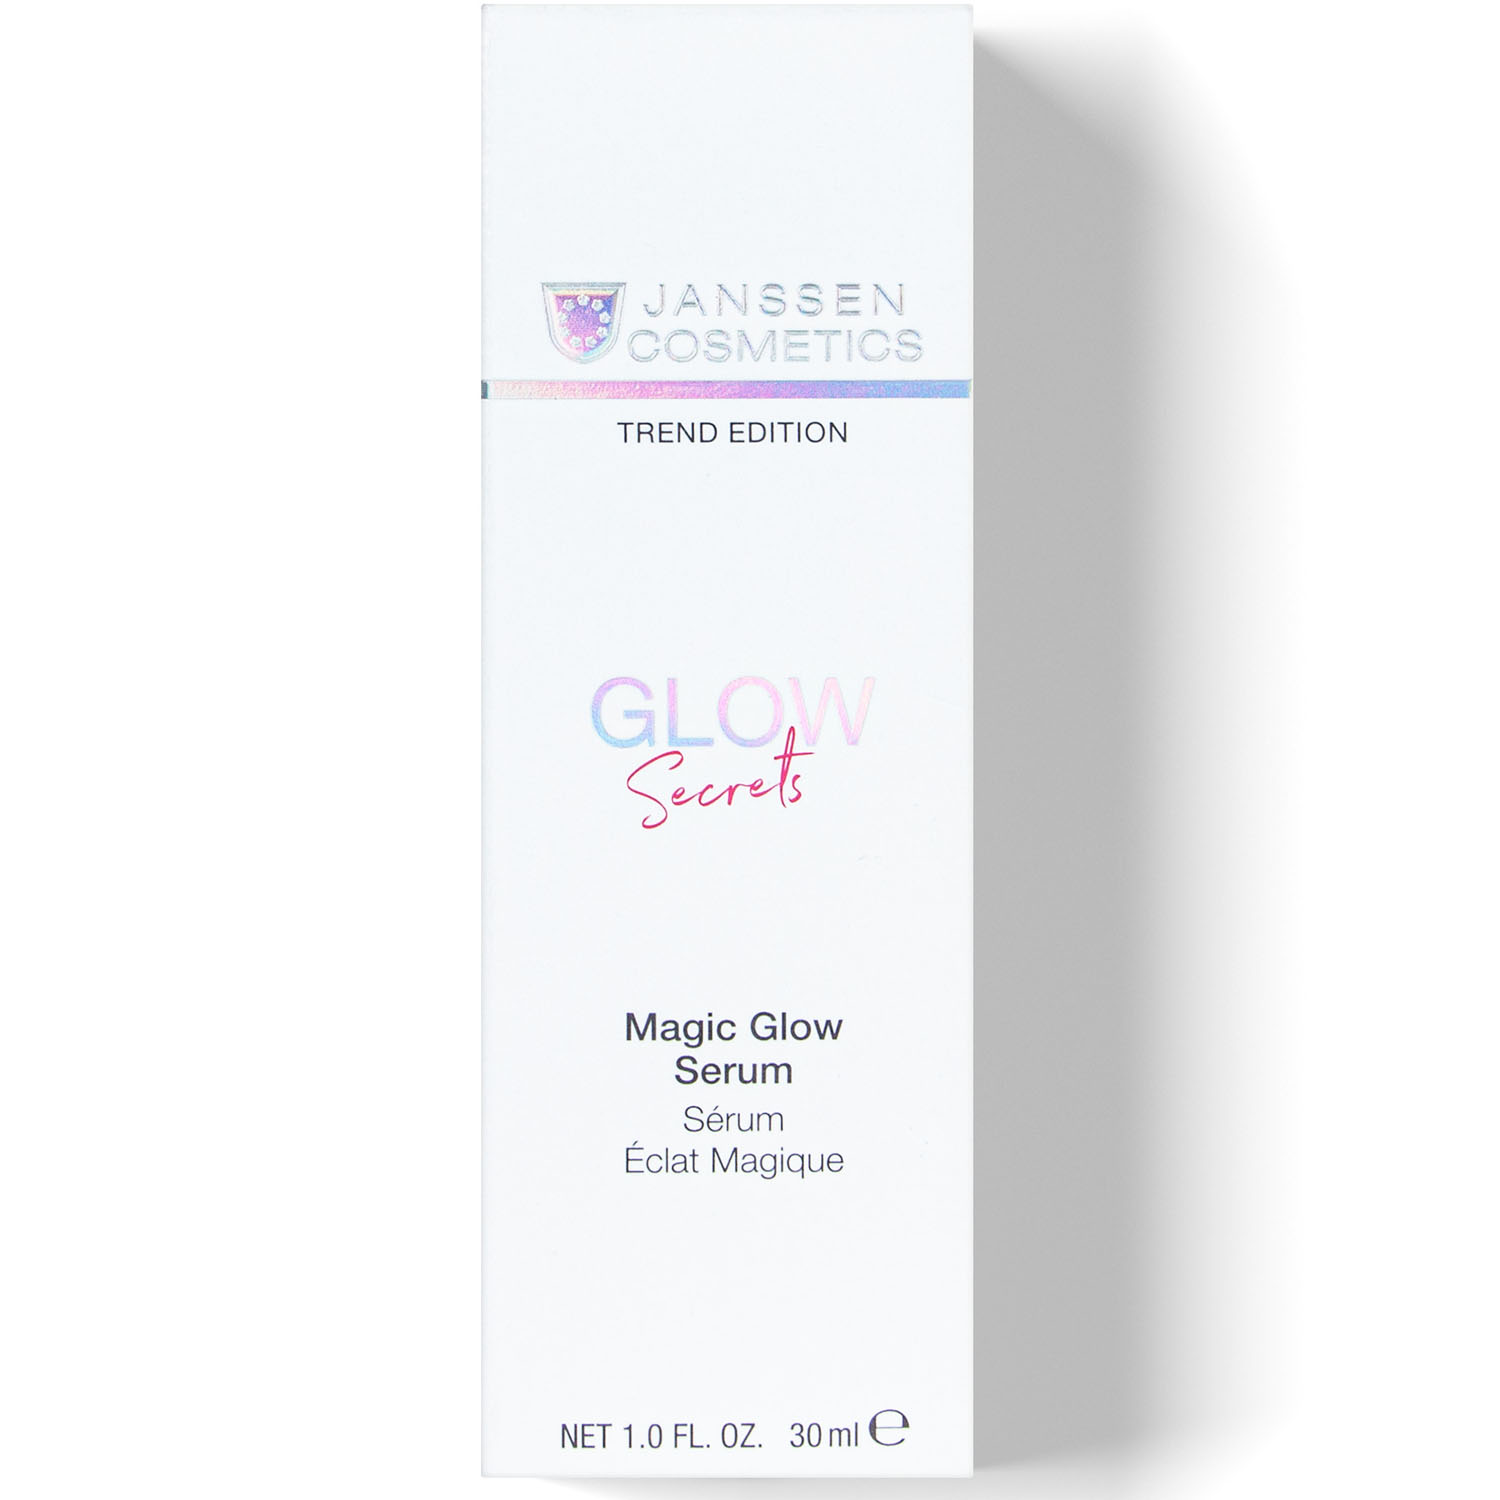 Janssen Cosmetics Увлажняющая anti-age сыворотка с мгновенным эффектом сияния Magic Glow Serum, 30 мл (Janssen Cosmetics, Trend Edition) janssen cosmetics sensational glow